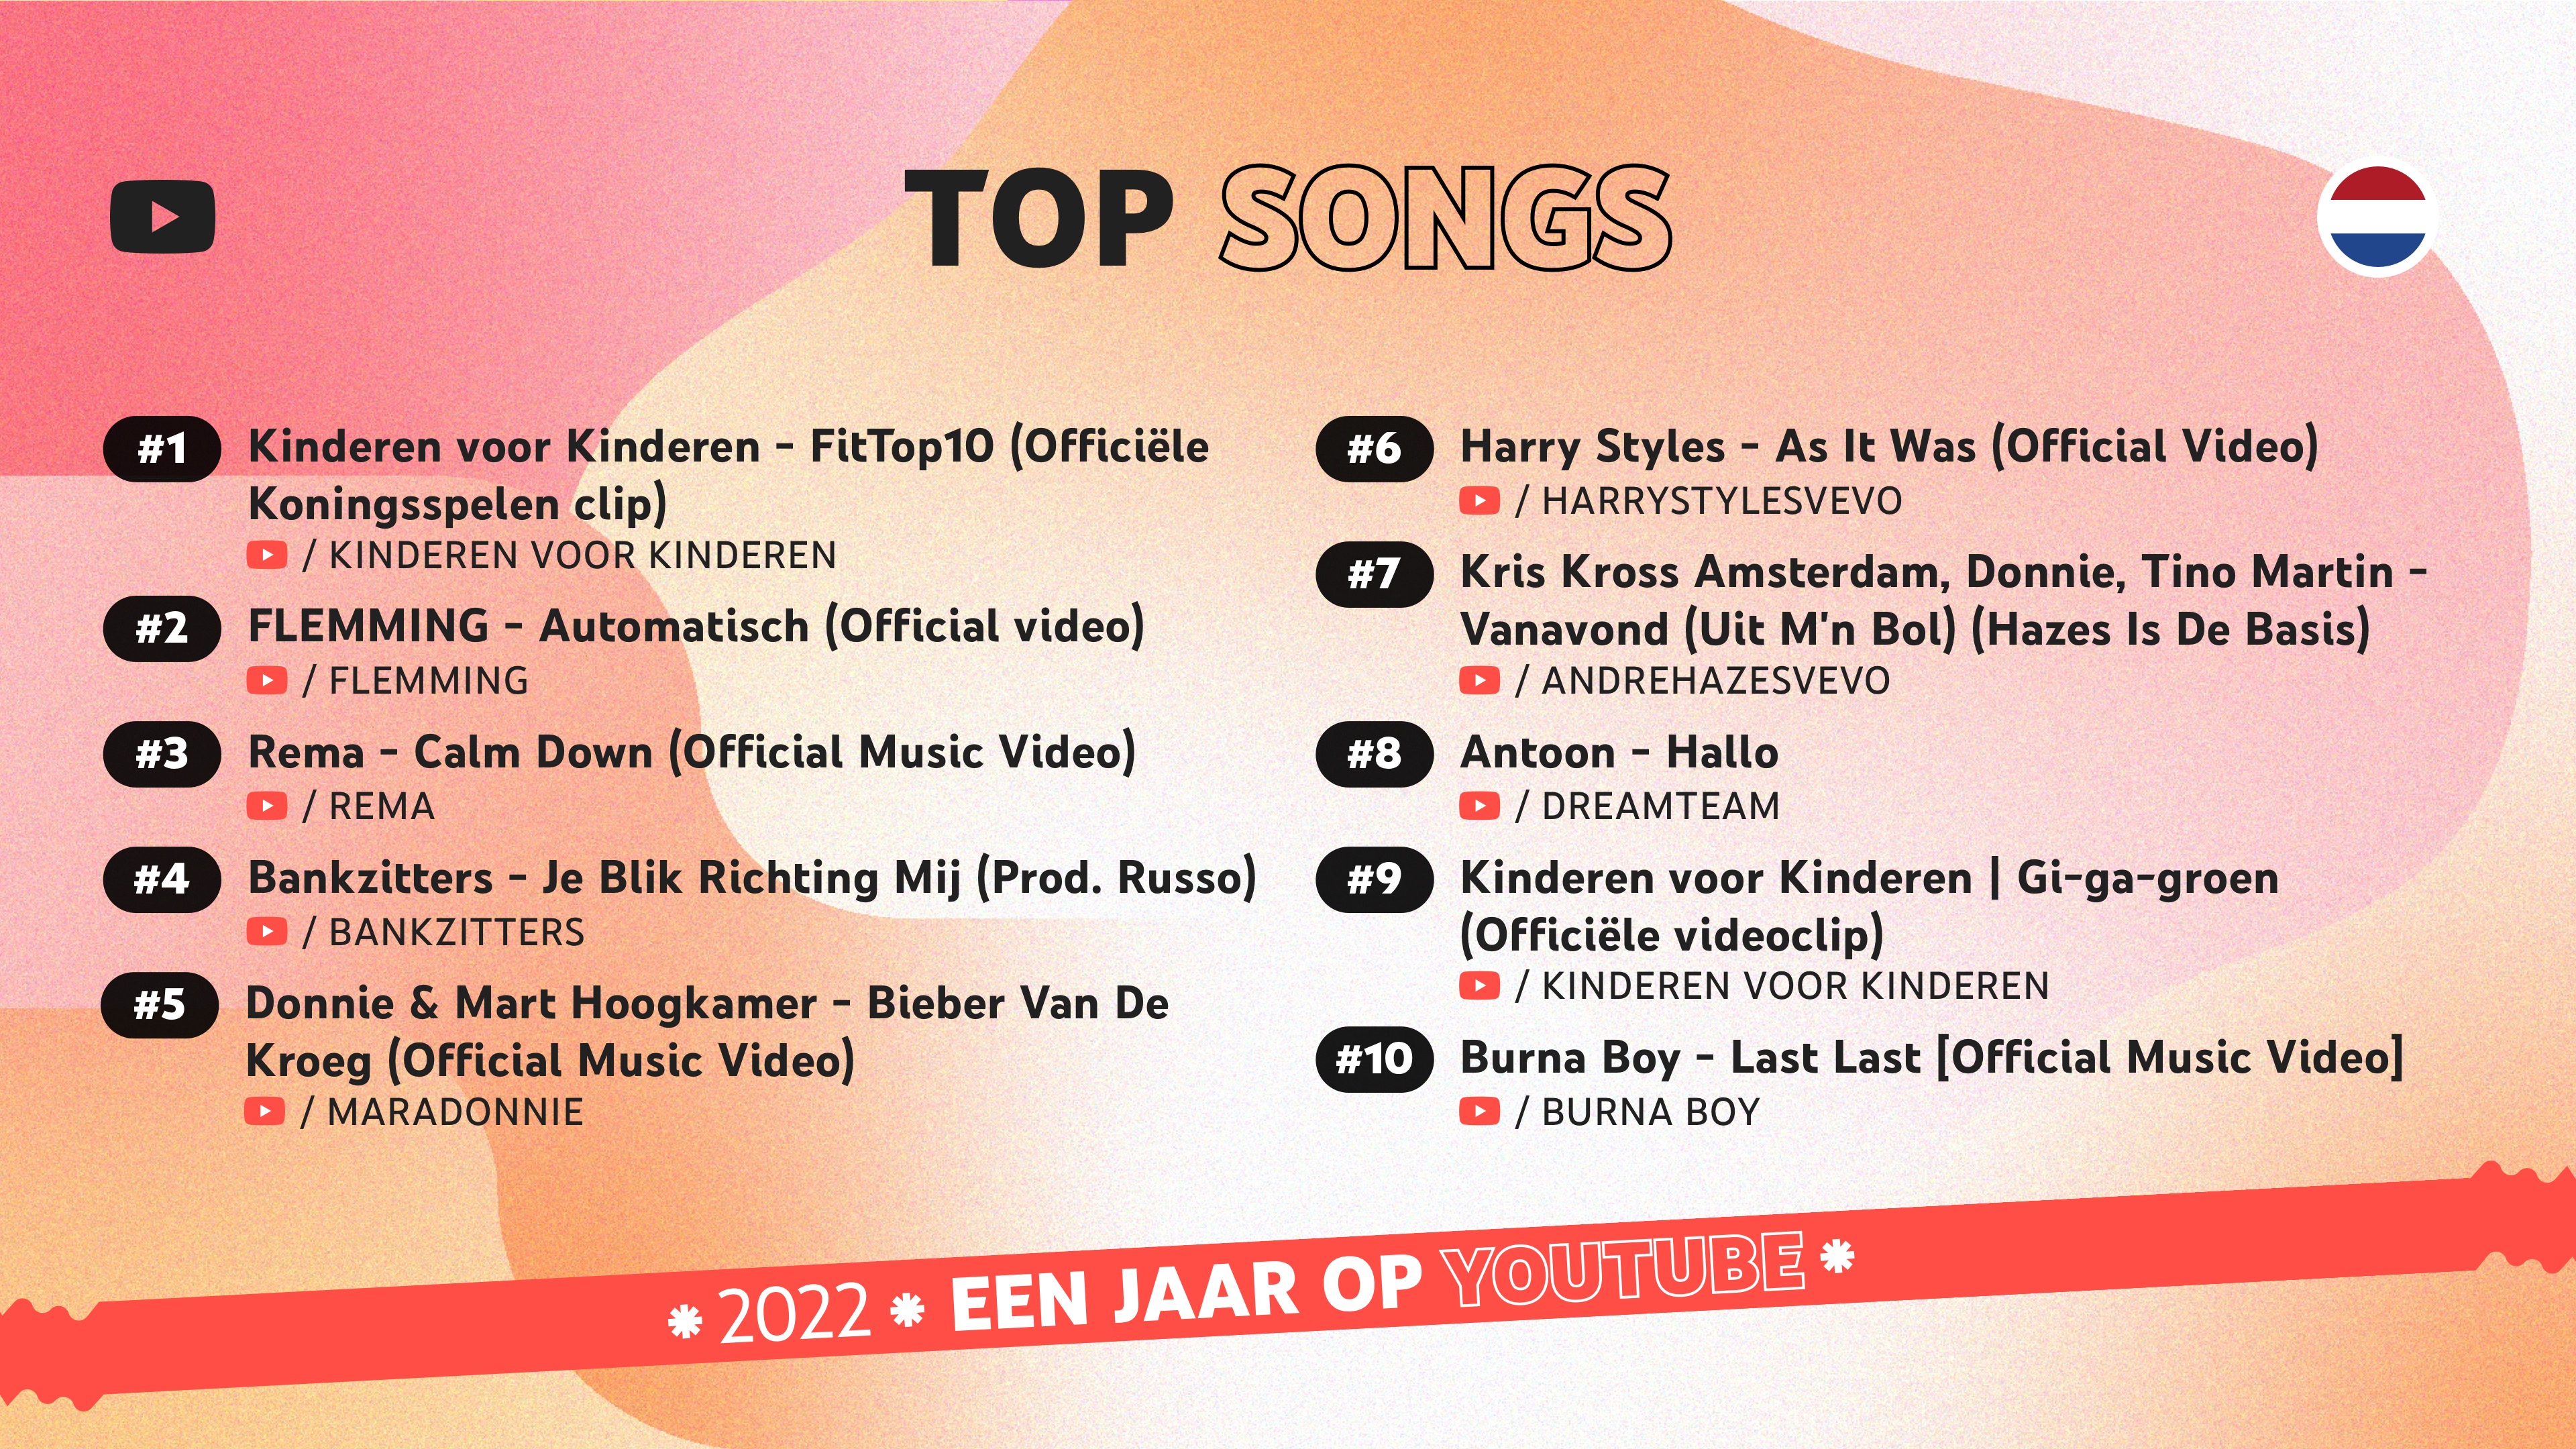 Een overzicht van de top trending muziekvideo's van 2022 in Nederland.